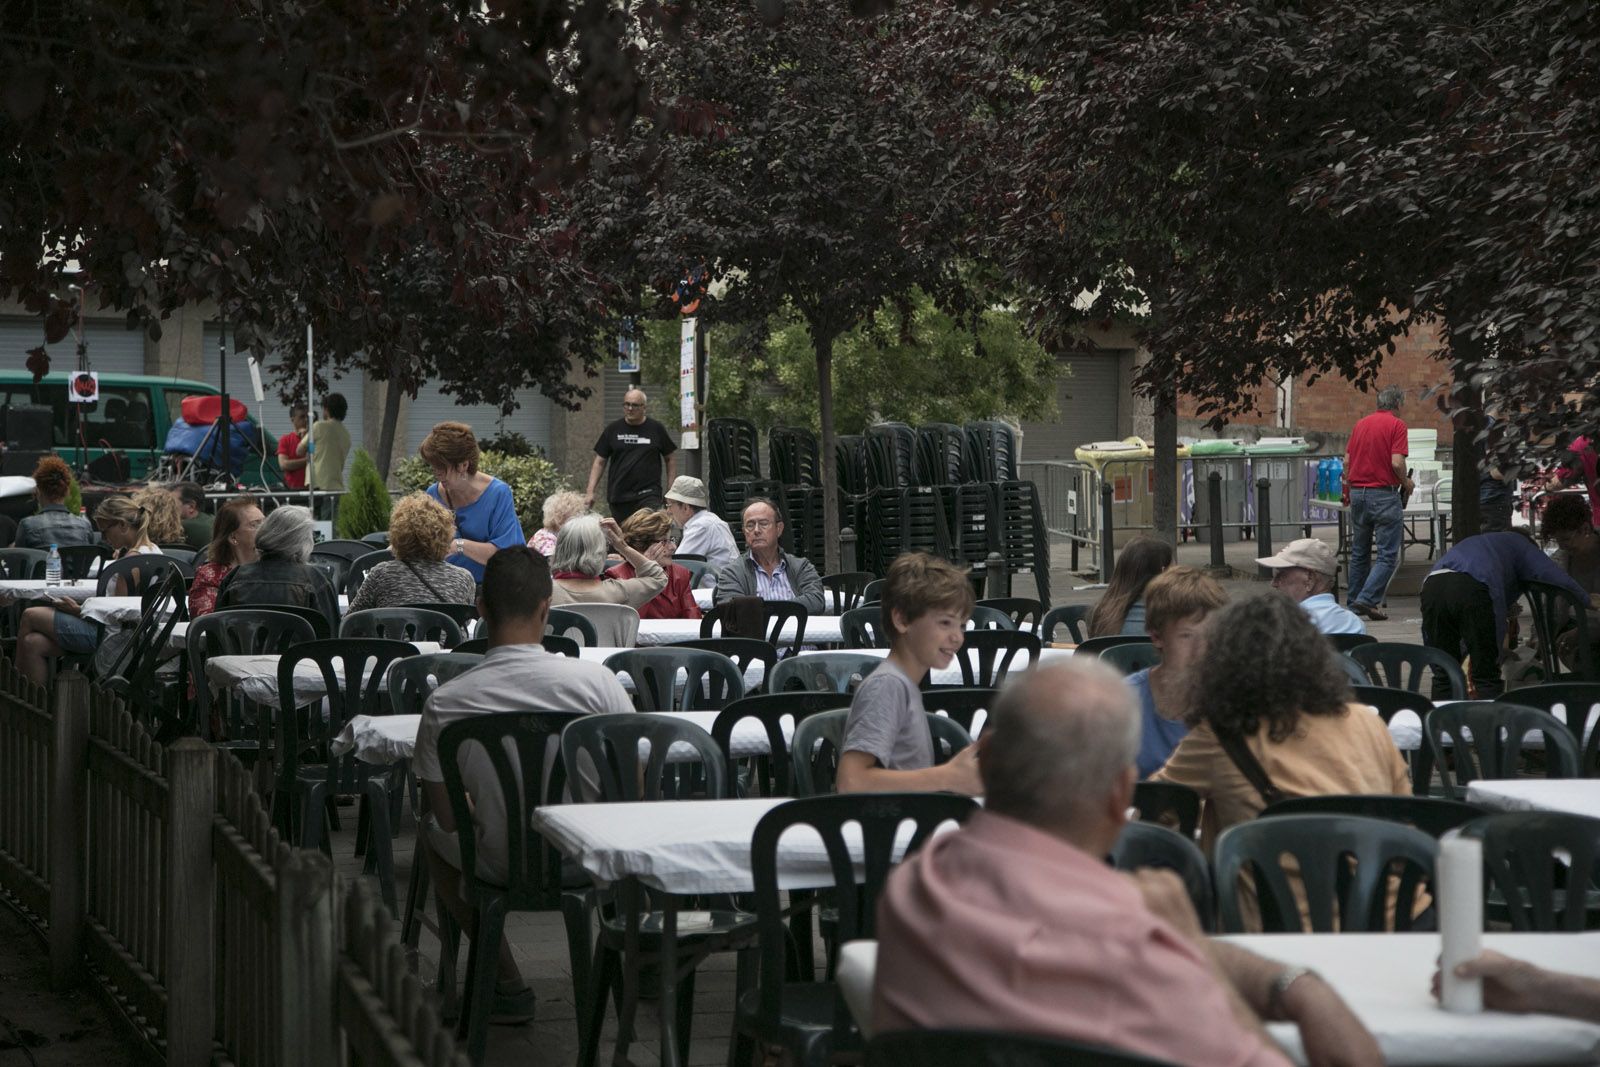 14è Sopar popular del barri Centre-Estació a la Plaça de Sant Antoni. FOTO: Lali Puig